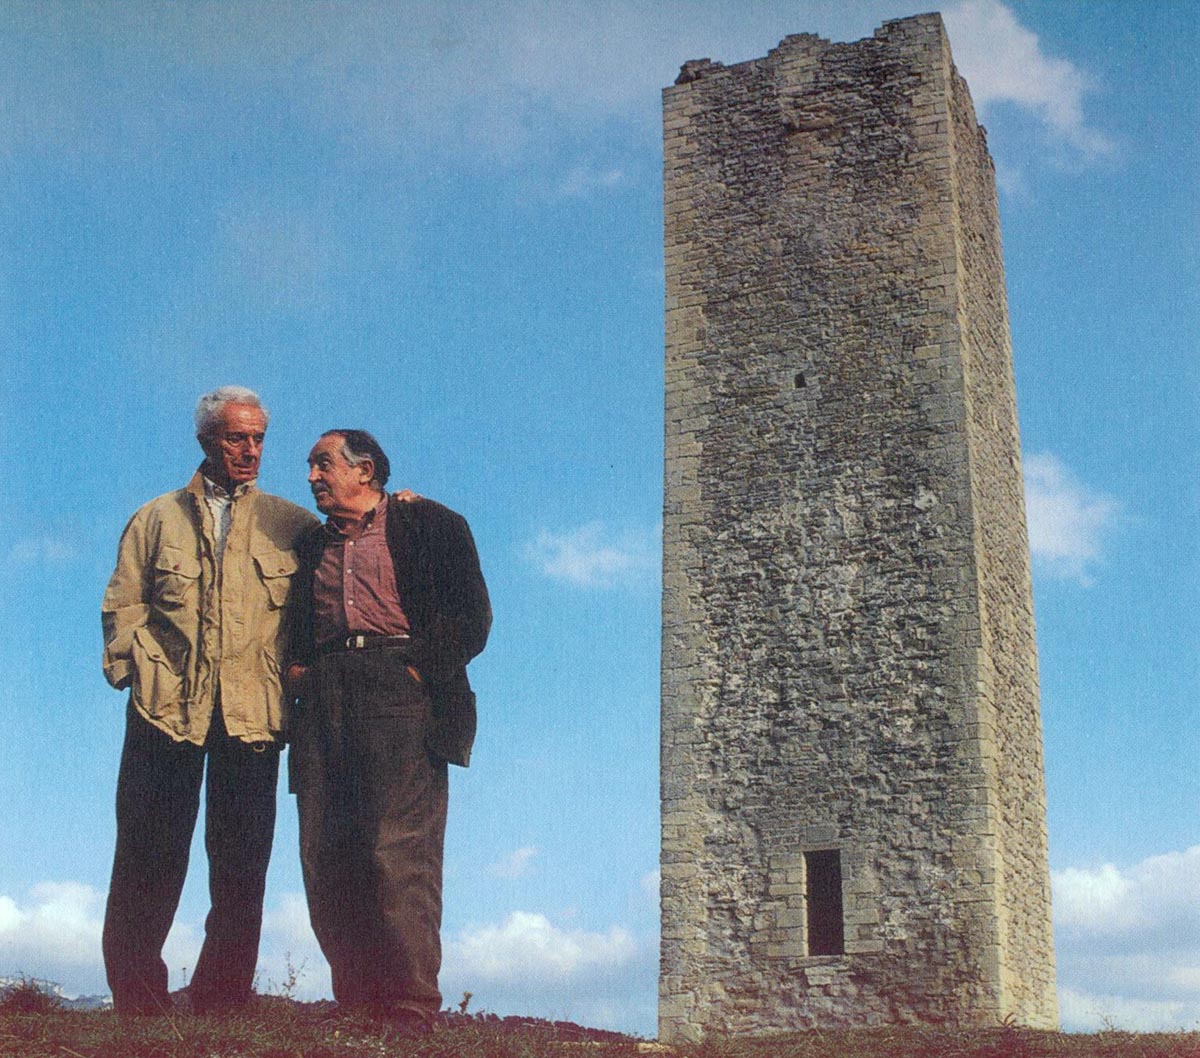 Tonino Guerra con il regista Michelangelo Antonioni: due grandi del cinema ripresi ai piedi della millenaria torre di Bascio, frazione di Pennabilli posta a 651 metri d’altezza